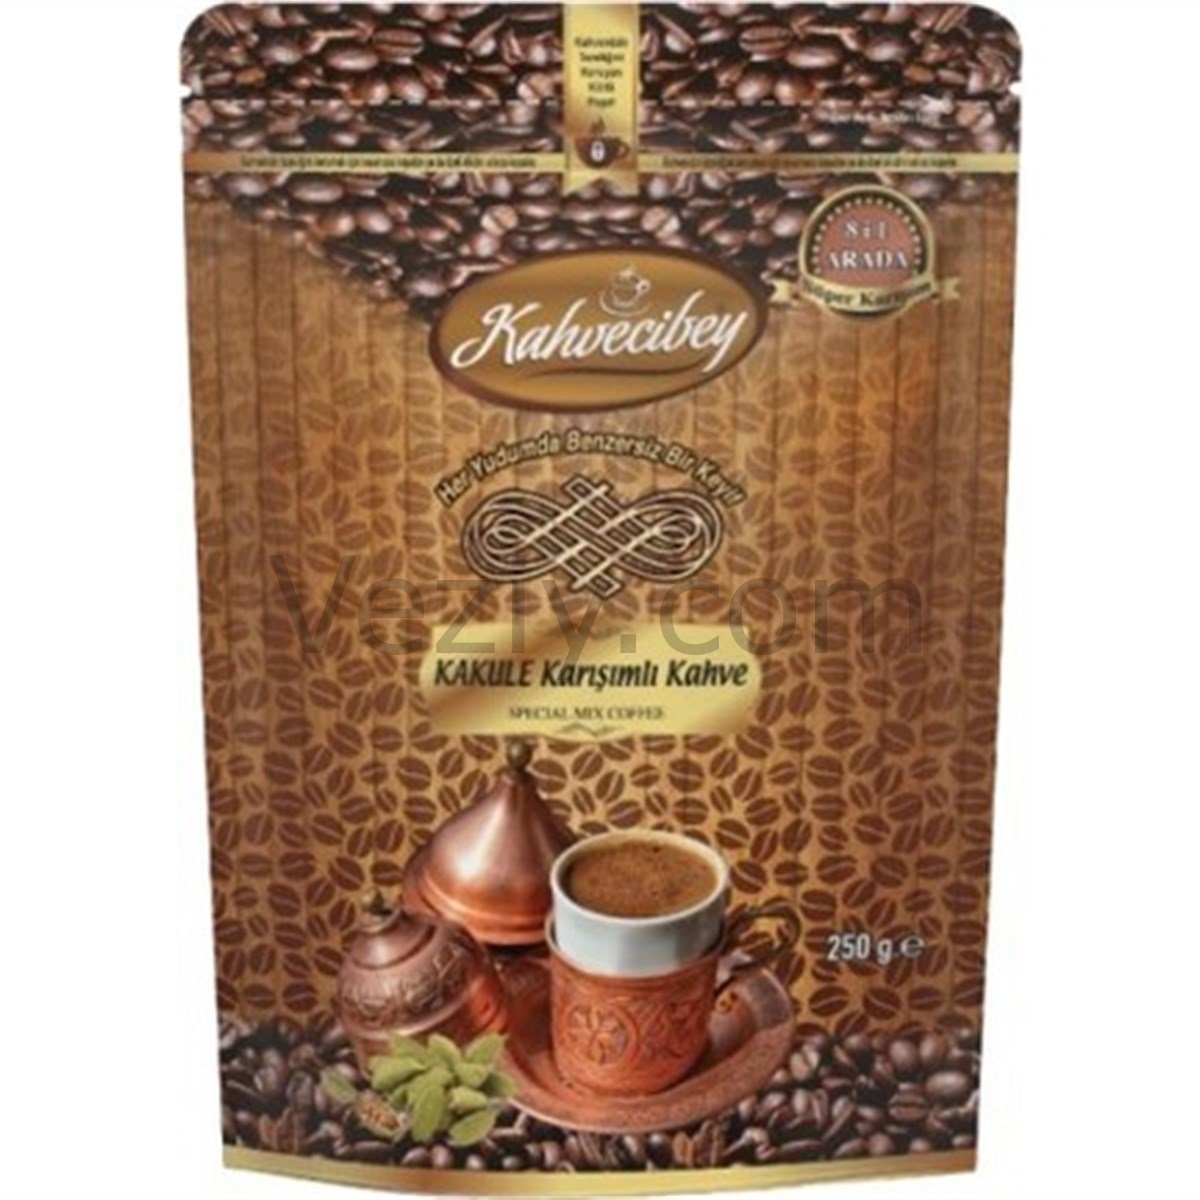 Kahvecibey Kakule Karışımlı Kahve 250 gr